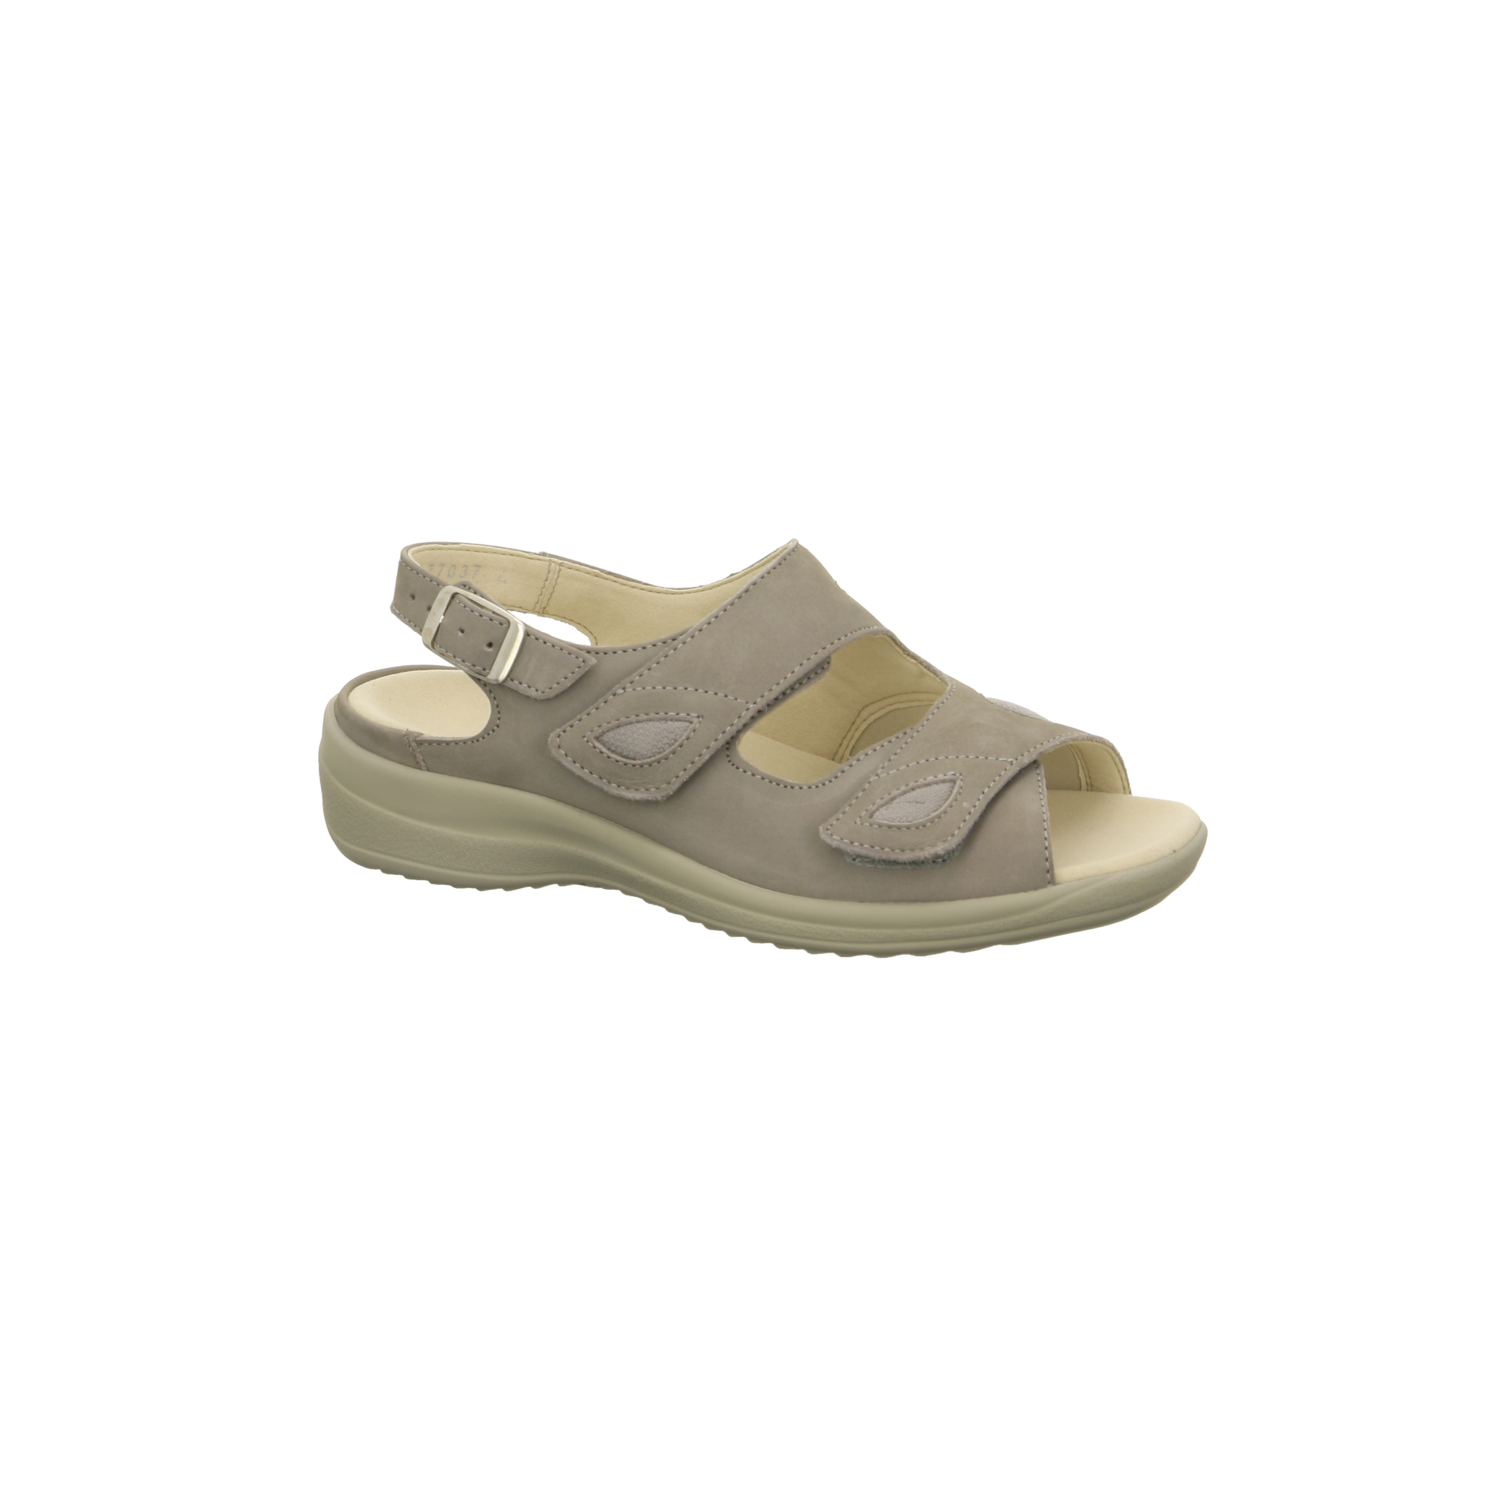 Ströber Comfort-Sandalette beige